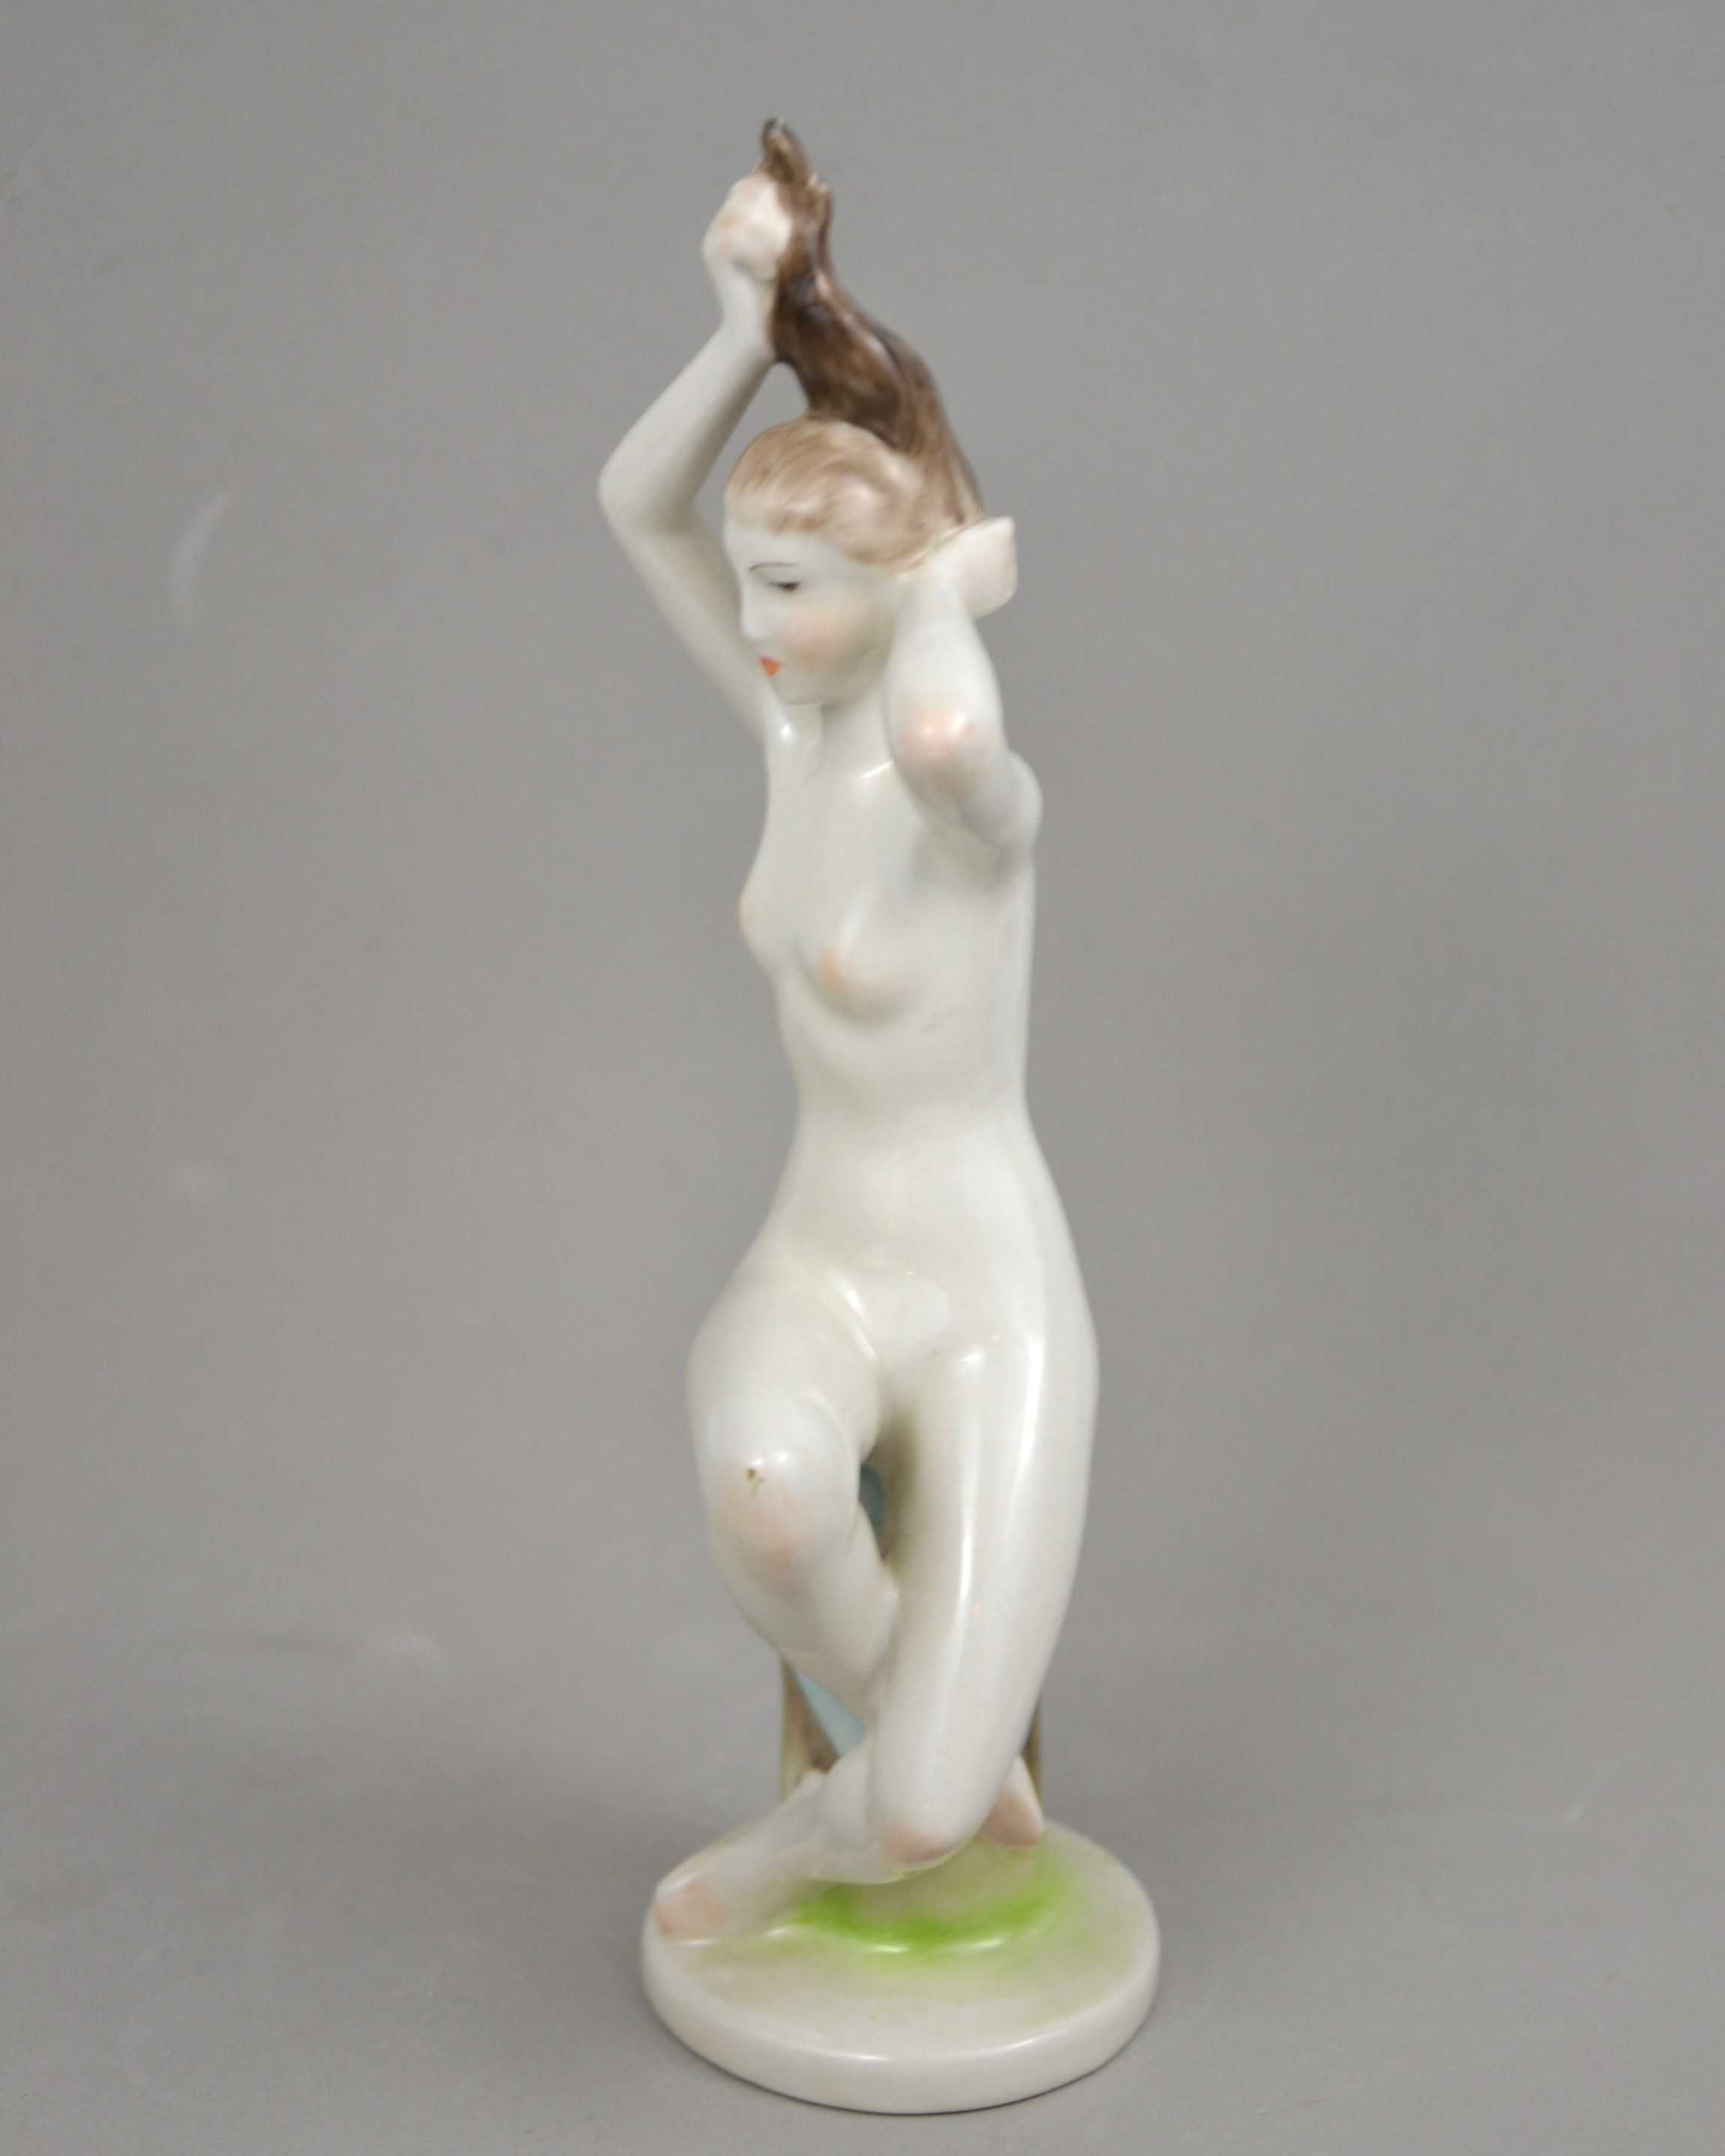 Akt statuetka nagiej kobiety czeszącej włosy Hollohaza Wys24,5cm